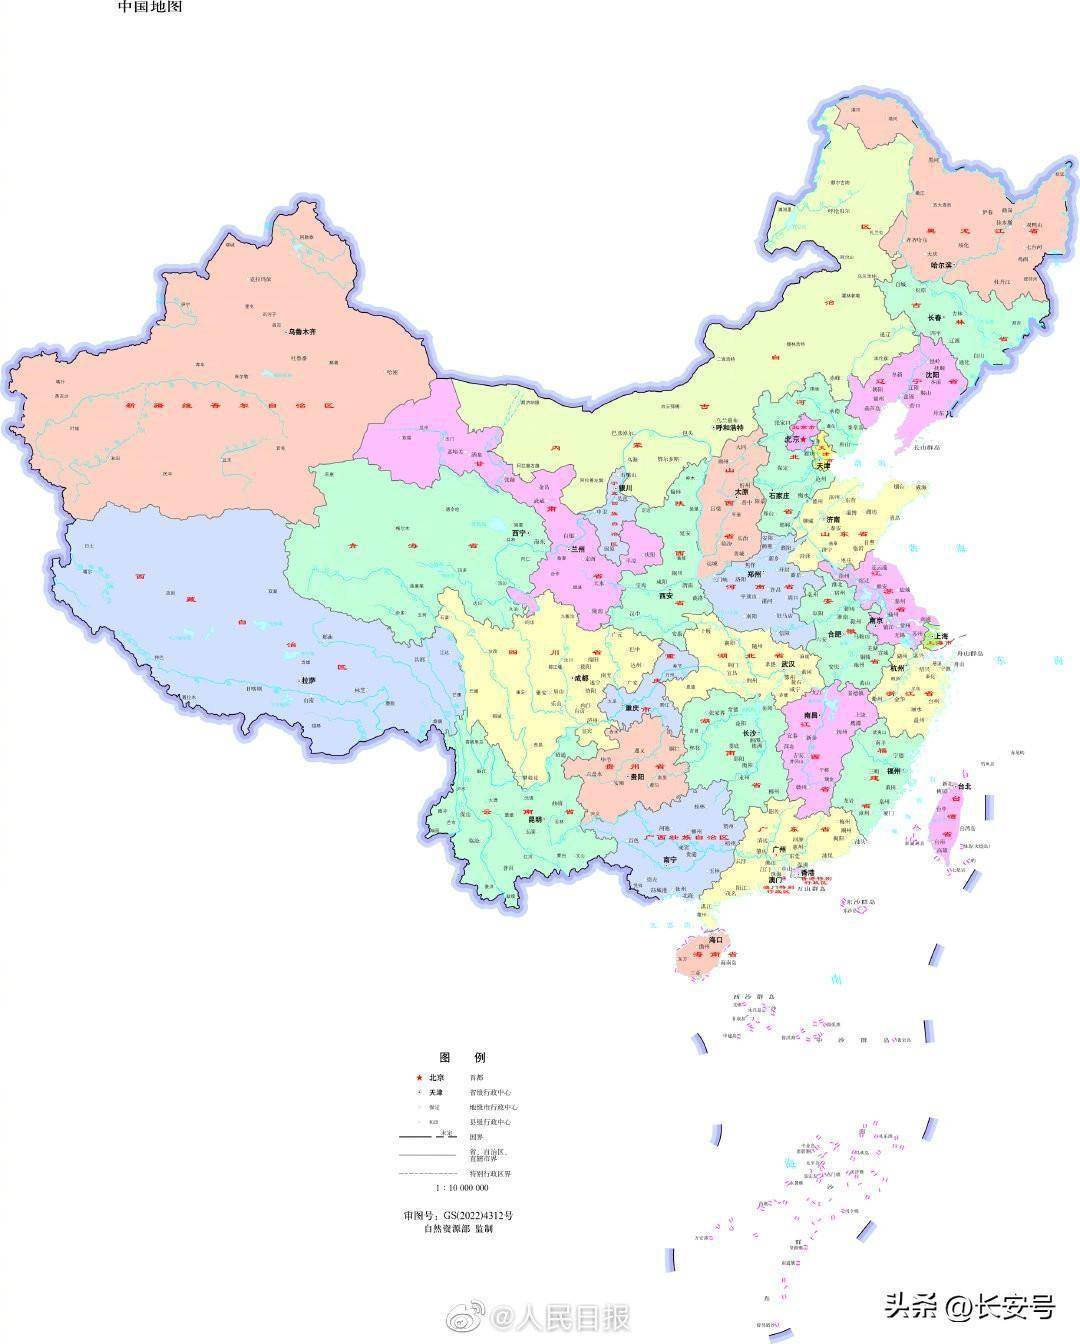 中国地图 简图 黑白图片